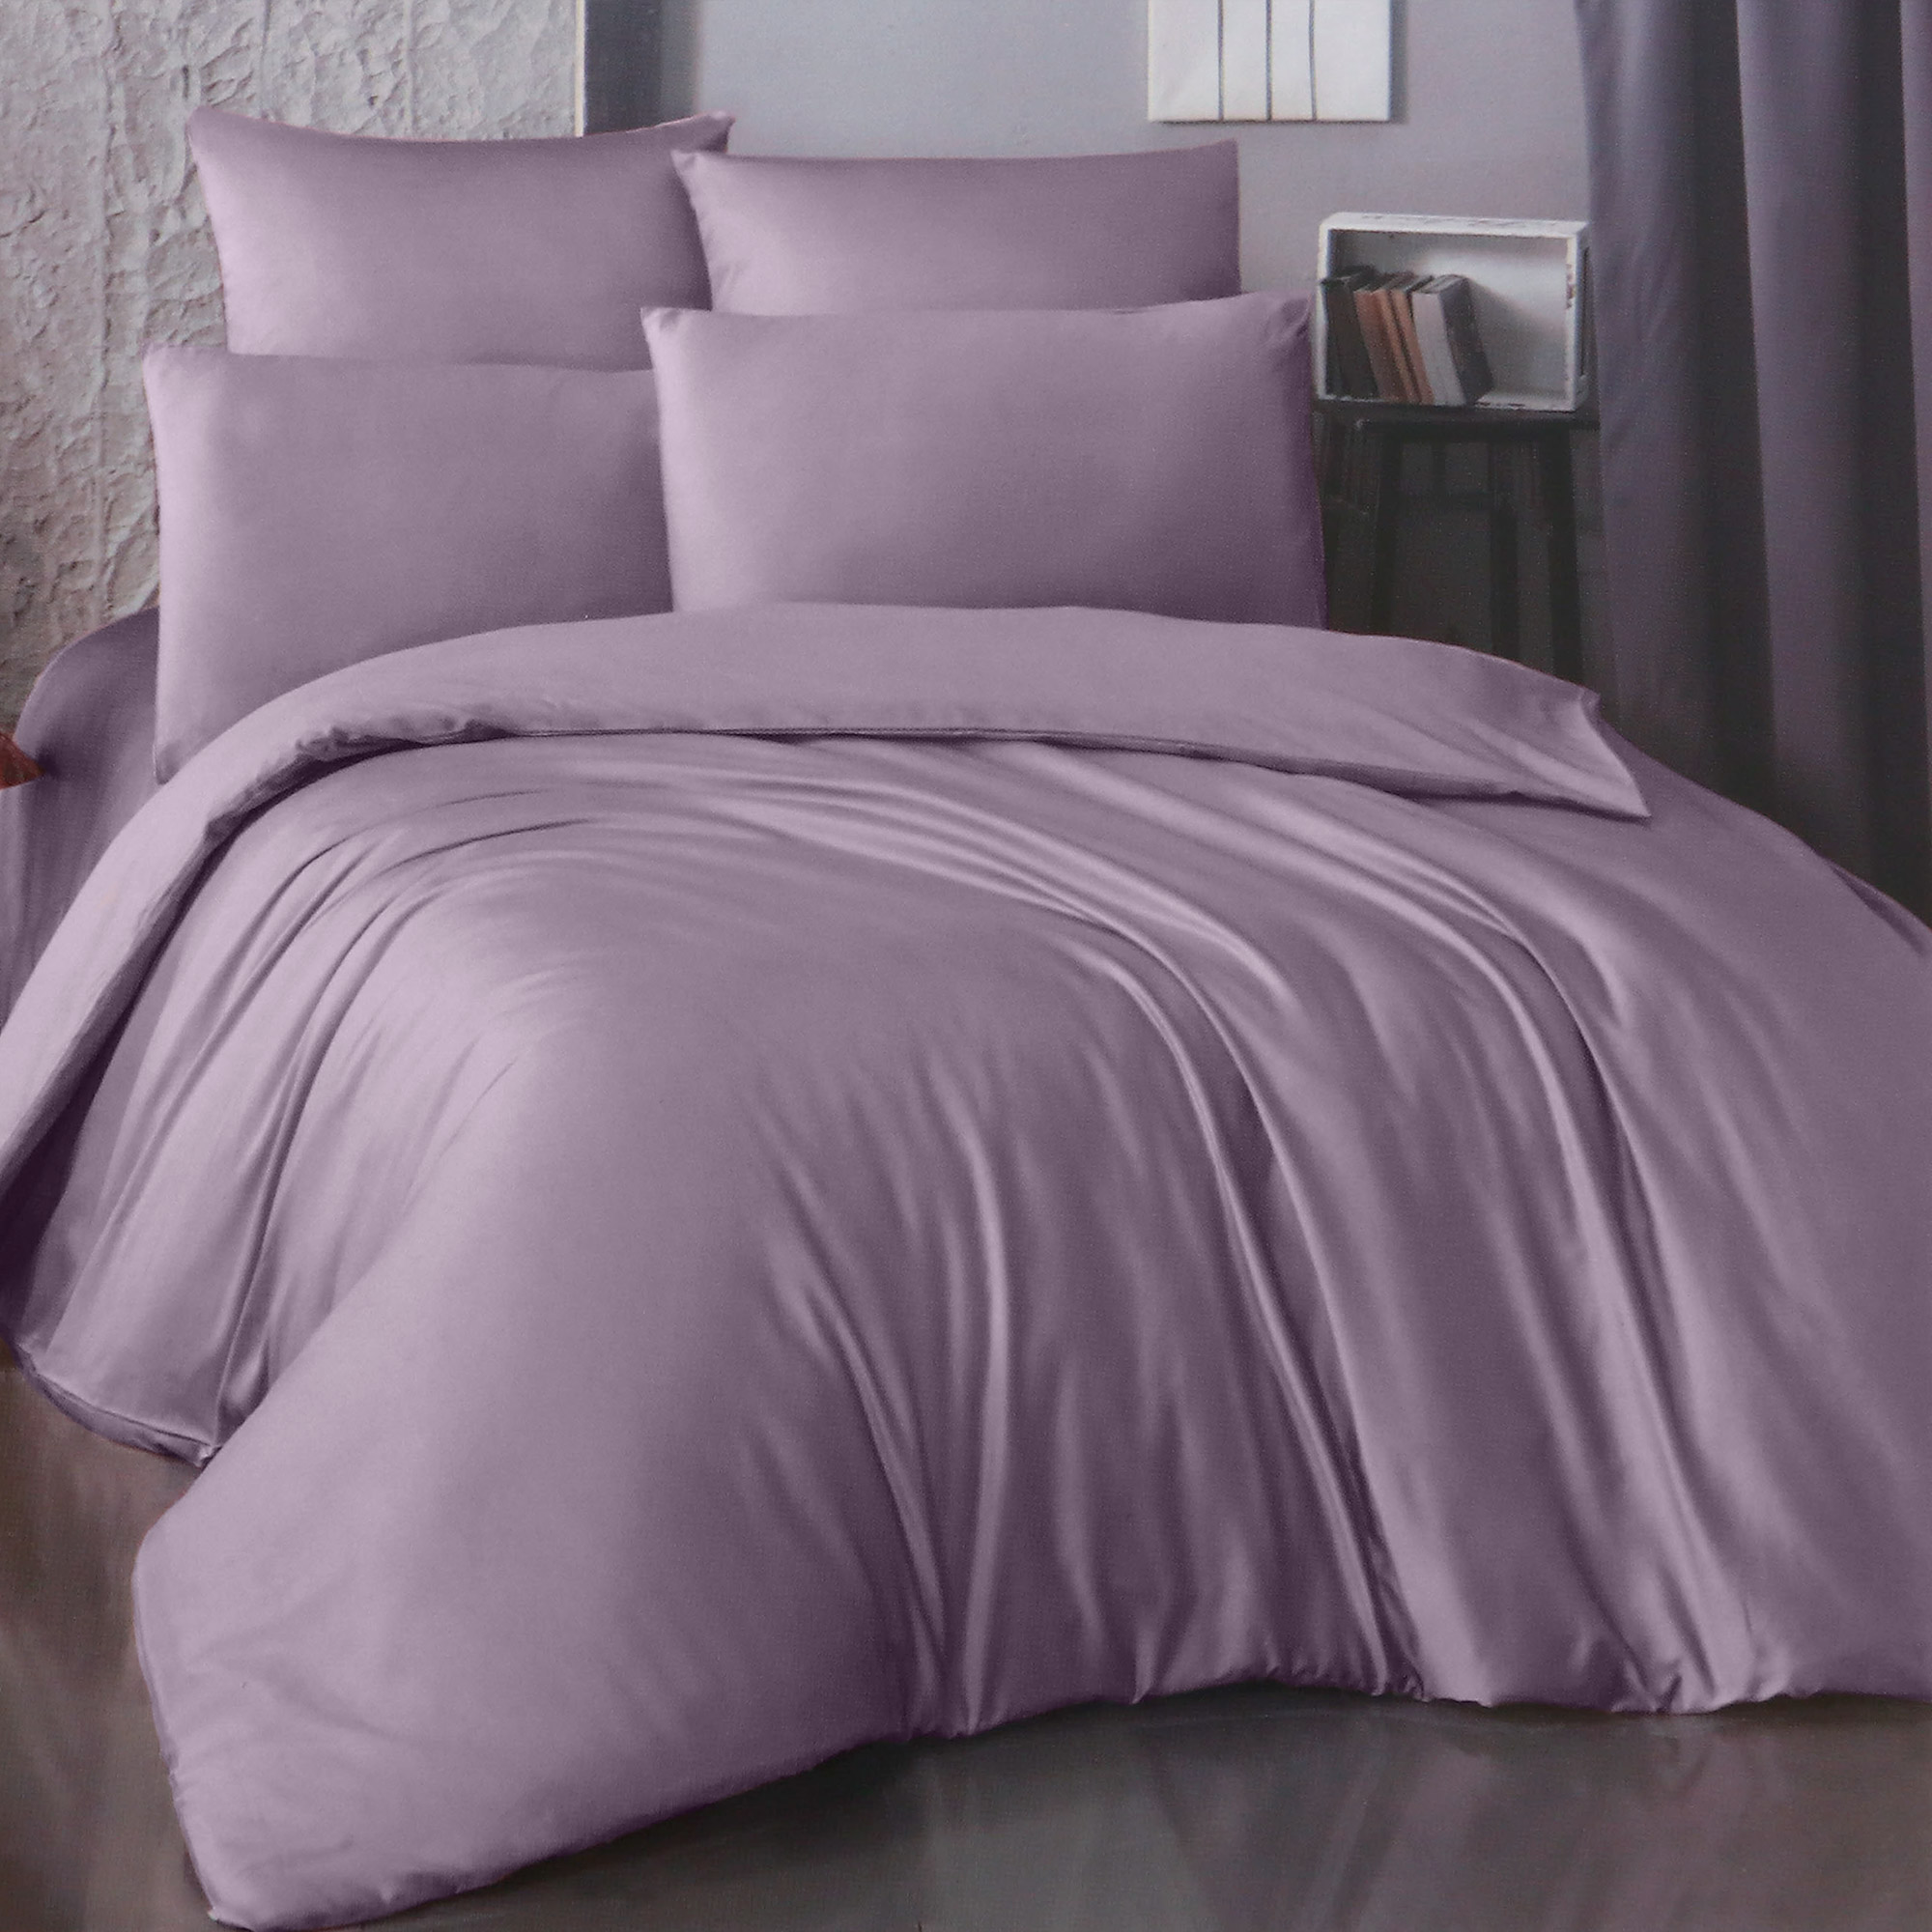 Комплект постельного белья La Besse Ранфорс сливовый Полуторный, размер Полуторный - фото 1